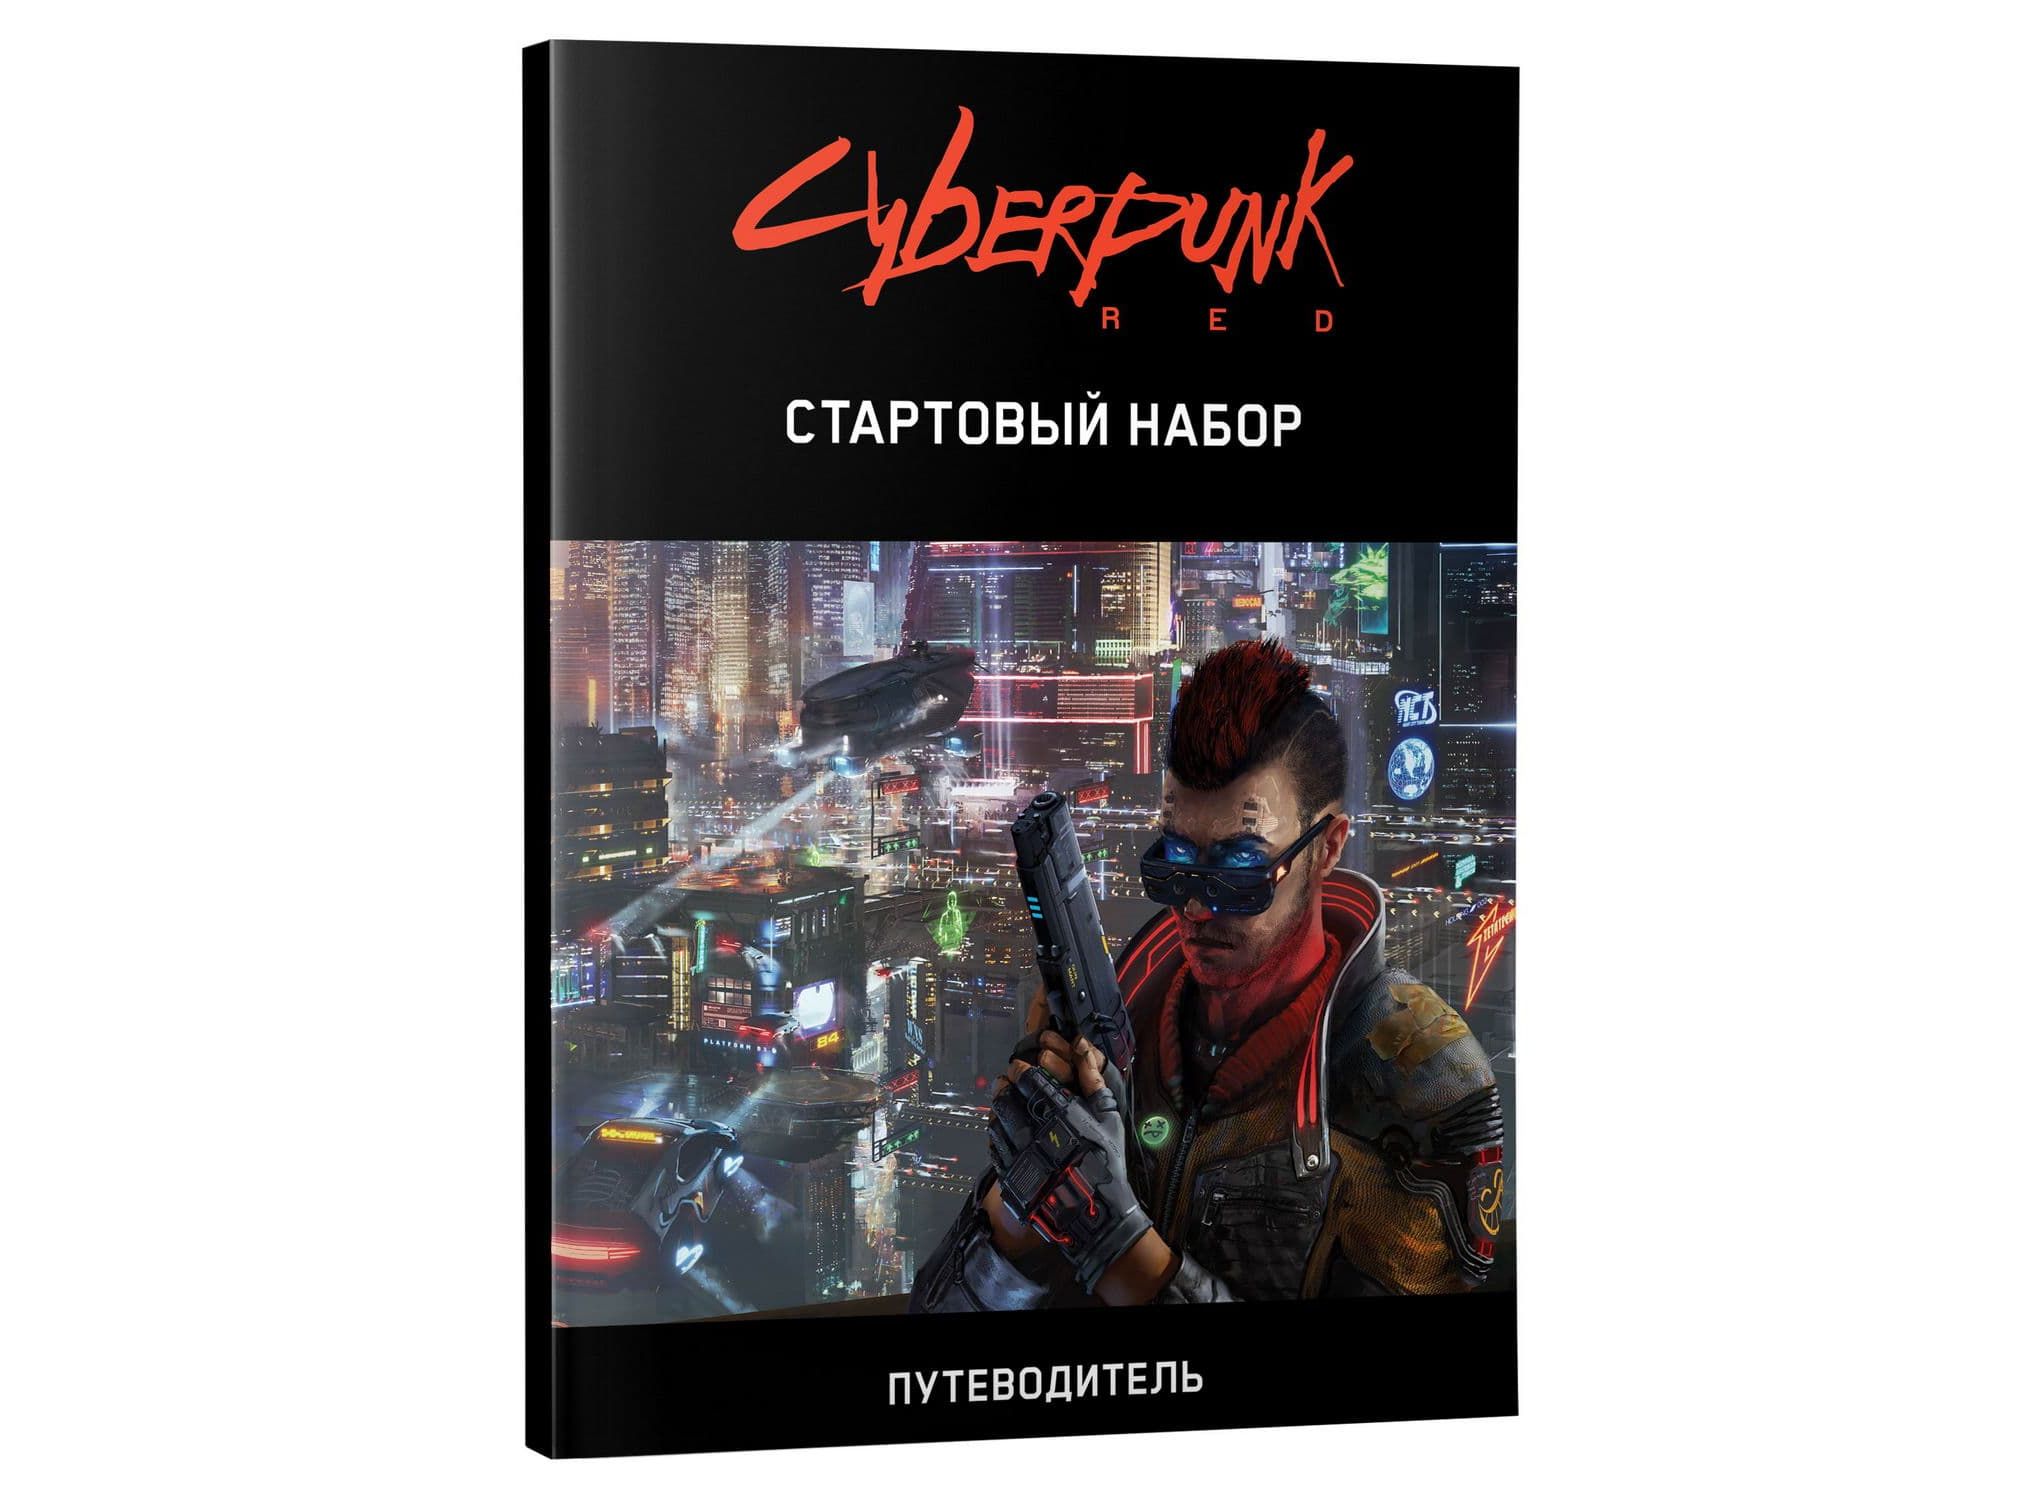 Cyberpunk red настольная игра купить на русском фото 89